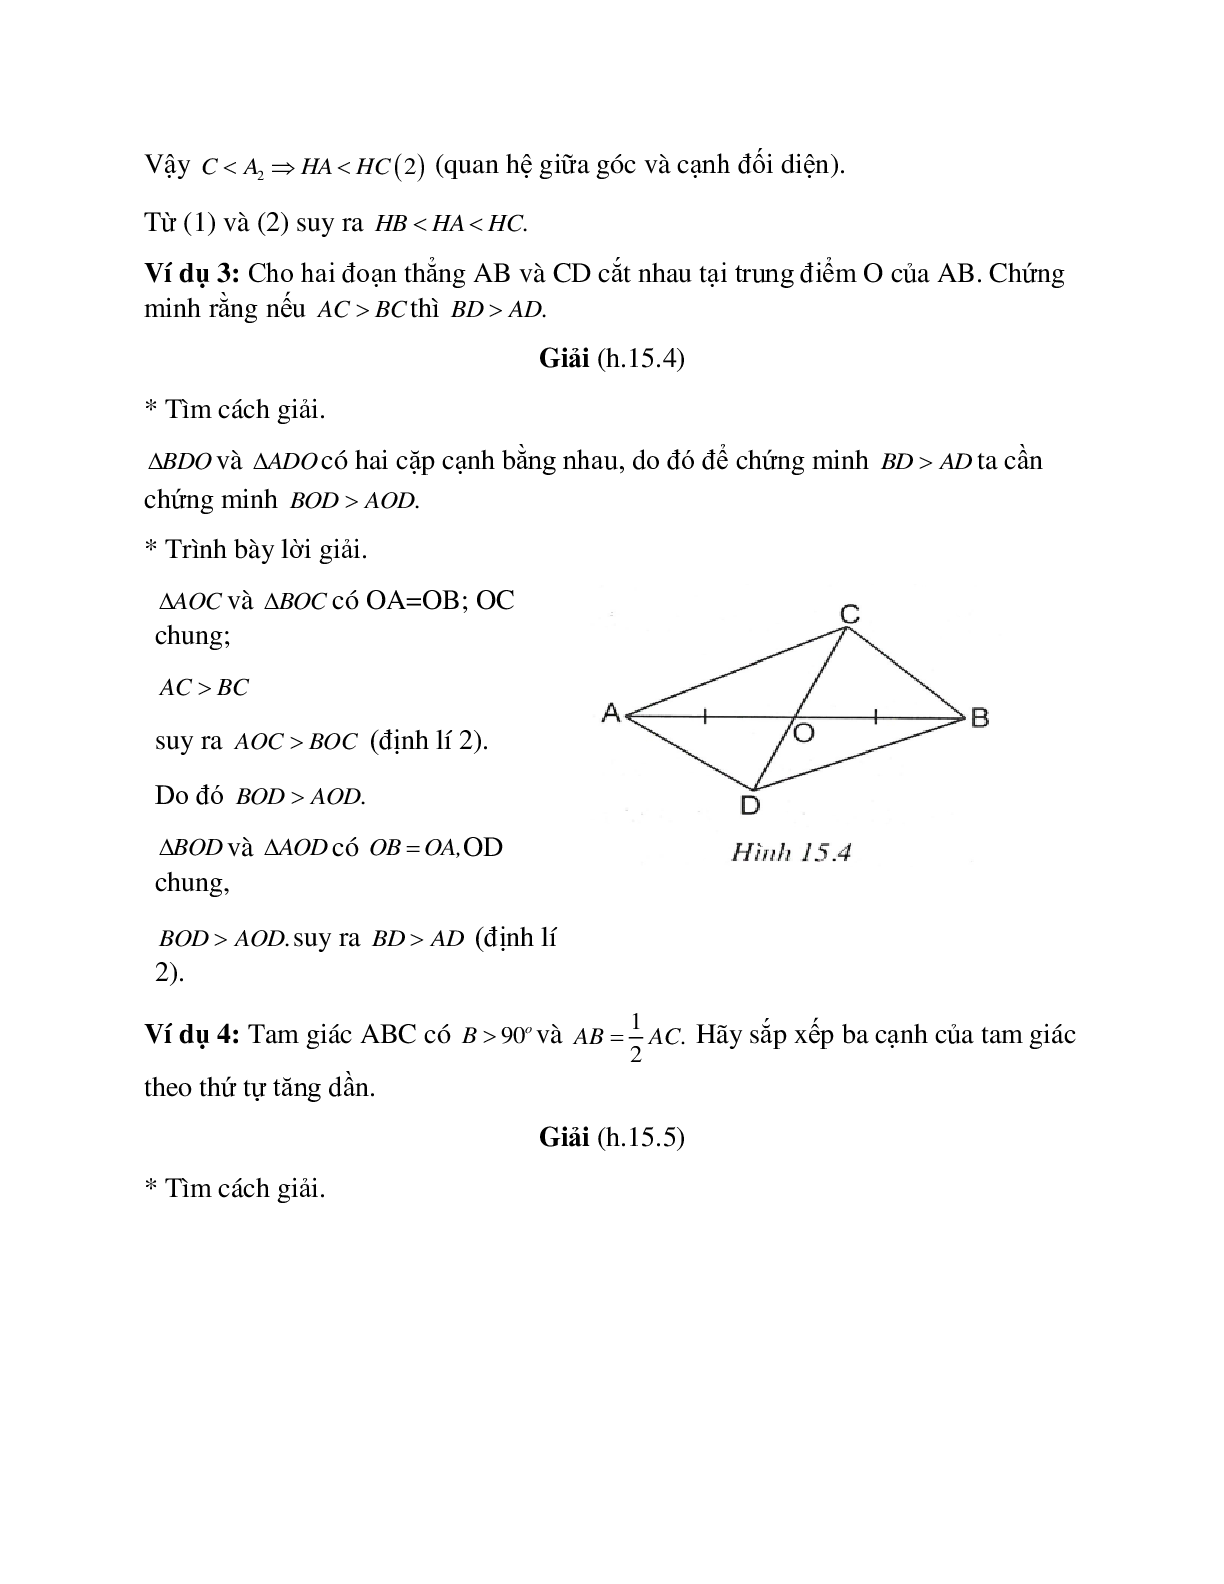 Phương pháp giải bài tập về Quan hệ giữa góc và cạnh đối diện trong một tam giác chọn lọc (trang 3)